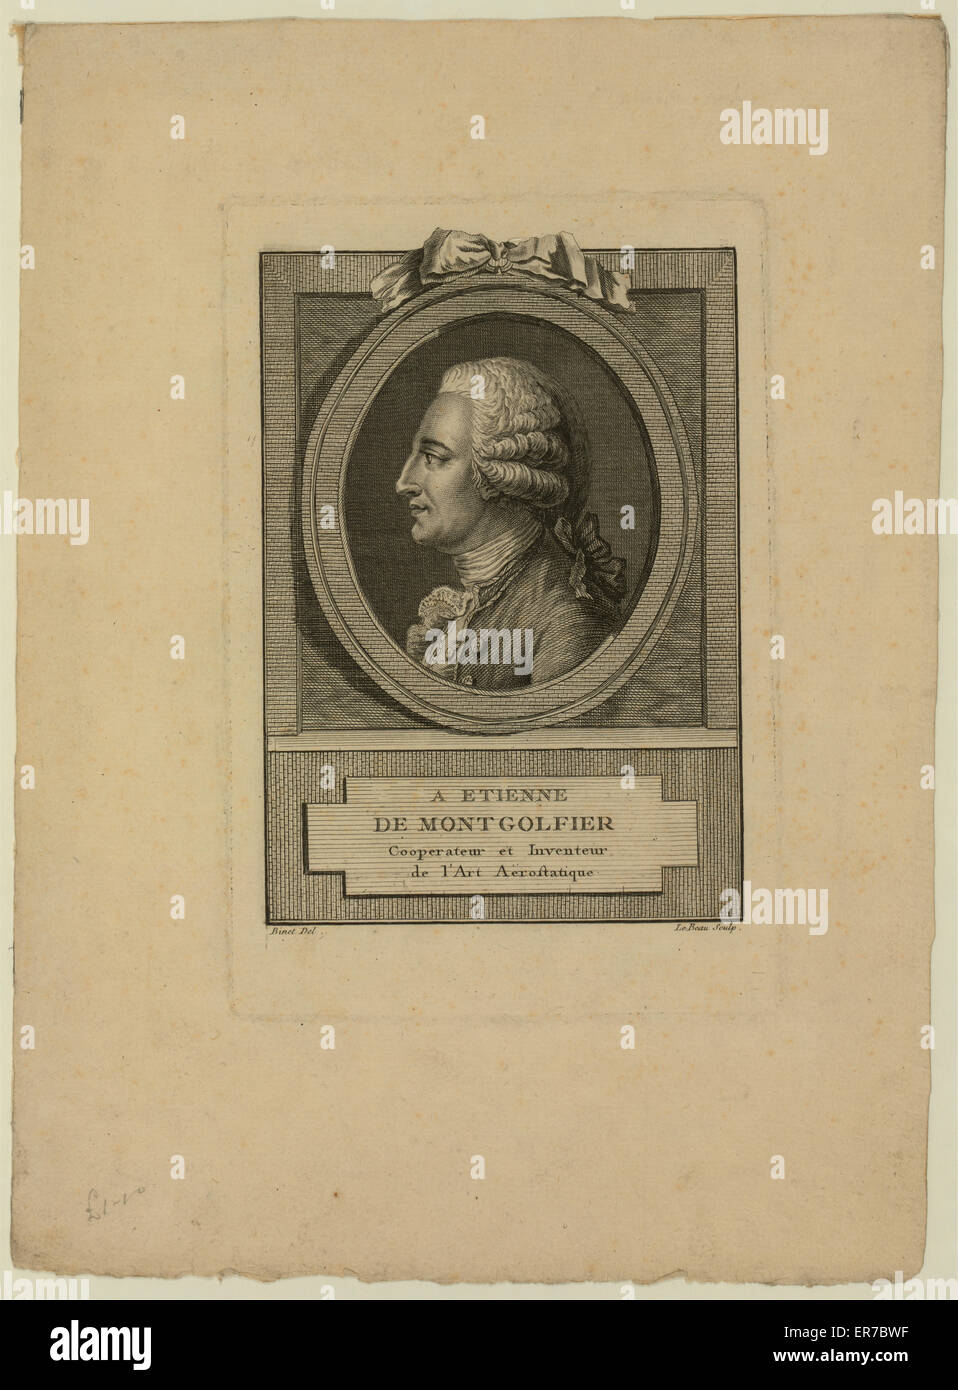 Un Etienne de Montgolfier, coopérant et inventeur de l'art Banque D'Images